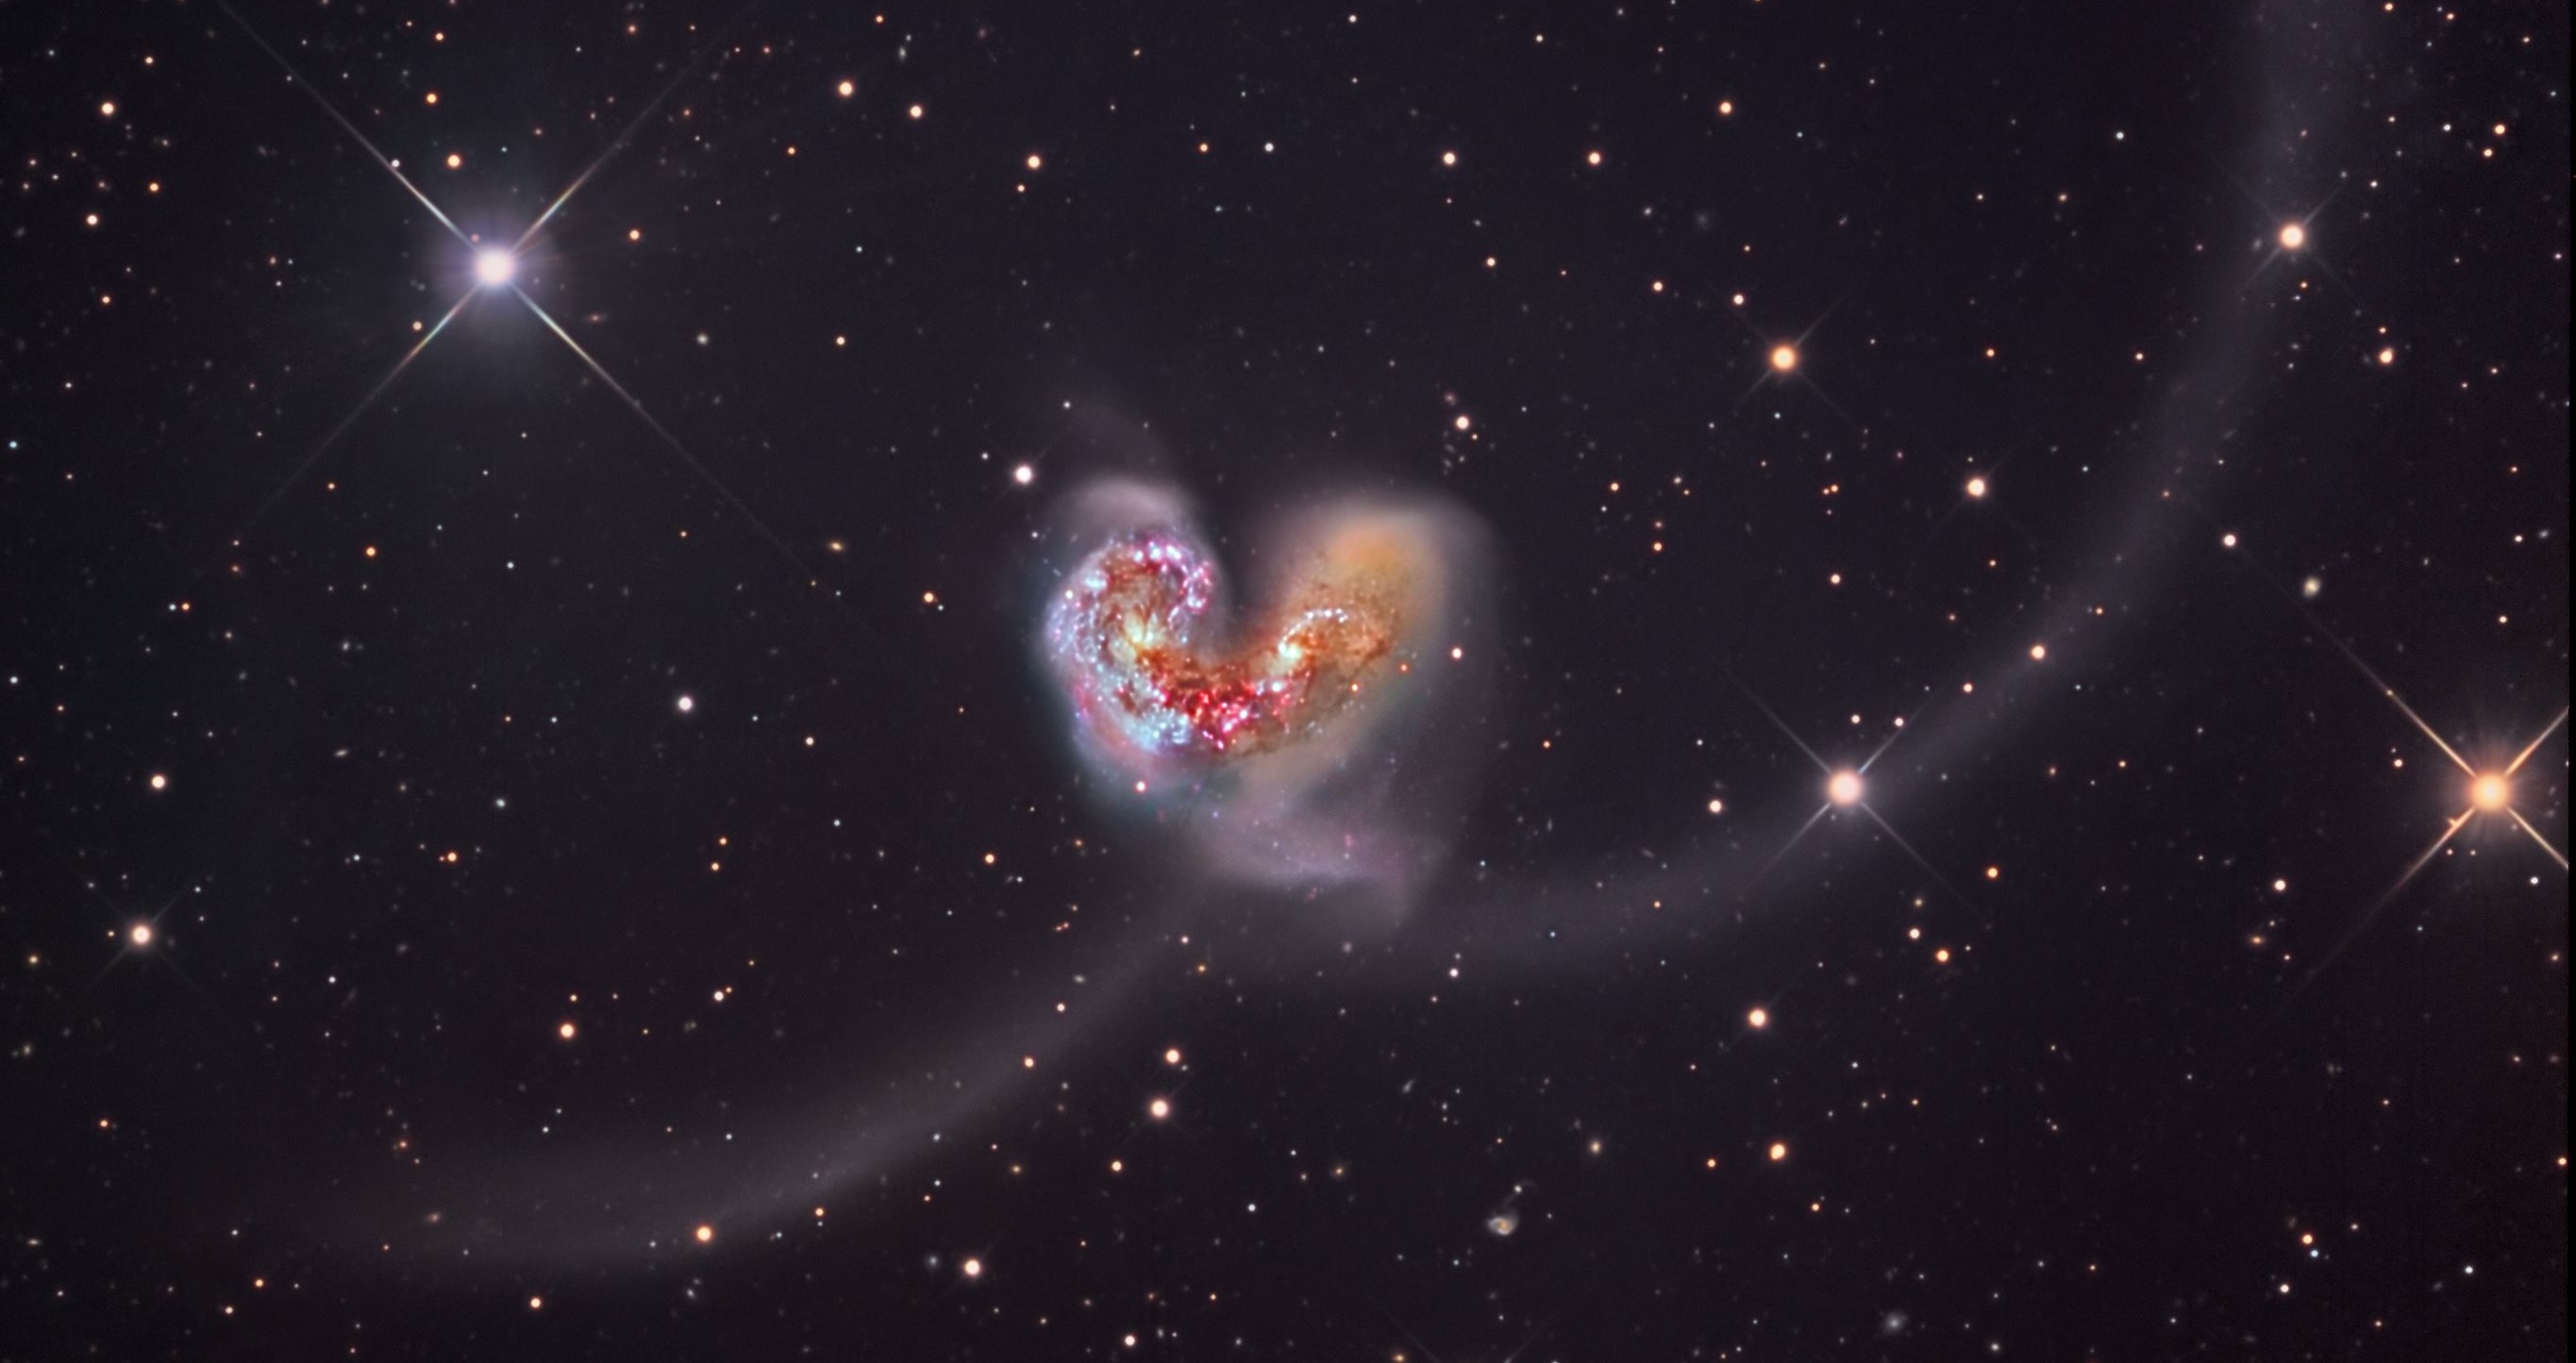 galaxy-collision-the-antennae.jpg